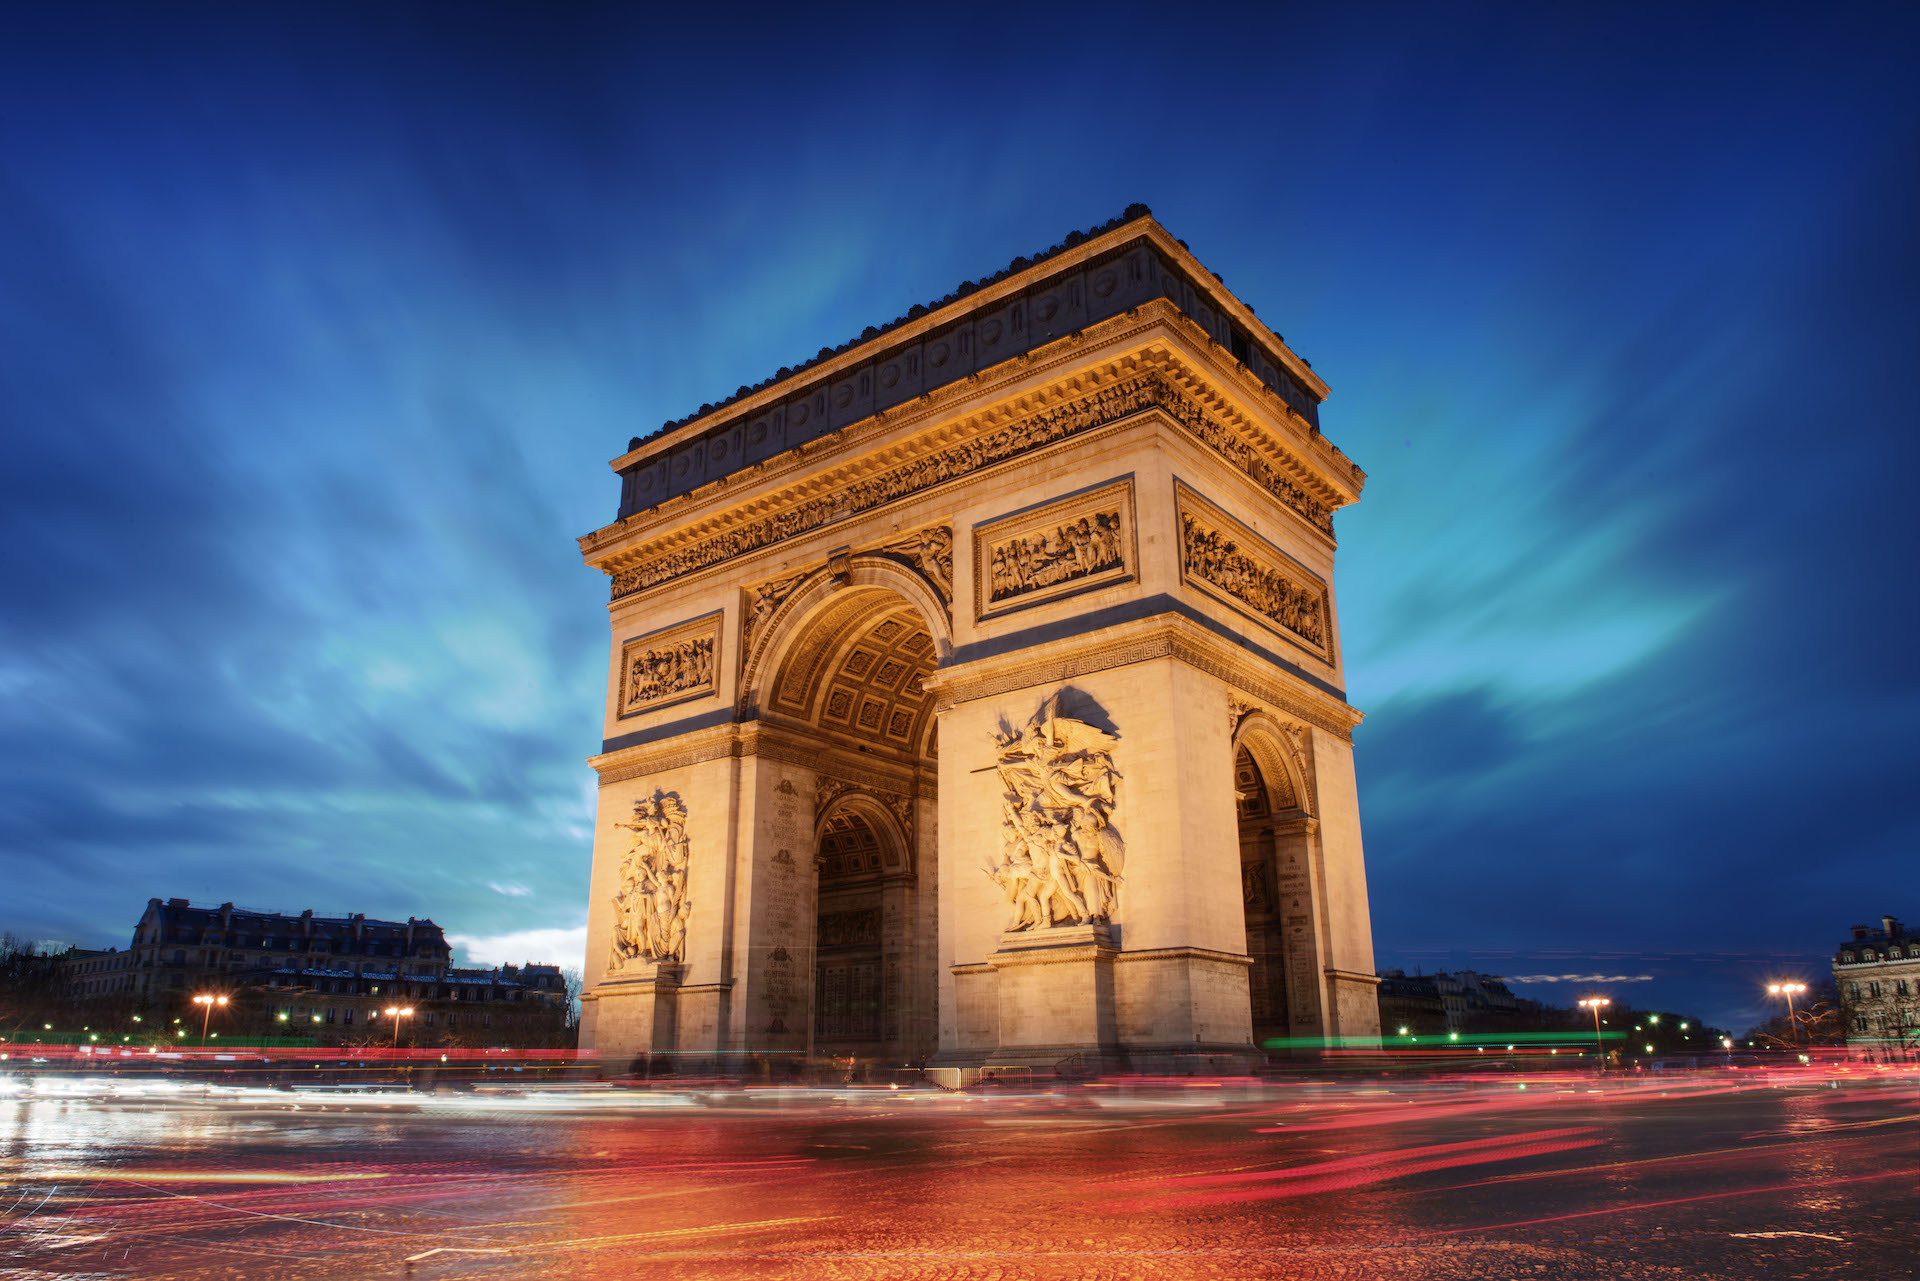 Símbolo da soberania de Napoleão Bonaparte, o Arco do Triunfo foi inaugurado em 1836 e hoje é um dos principais pontos turisticos de Paris/Divulgação